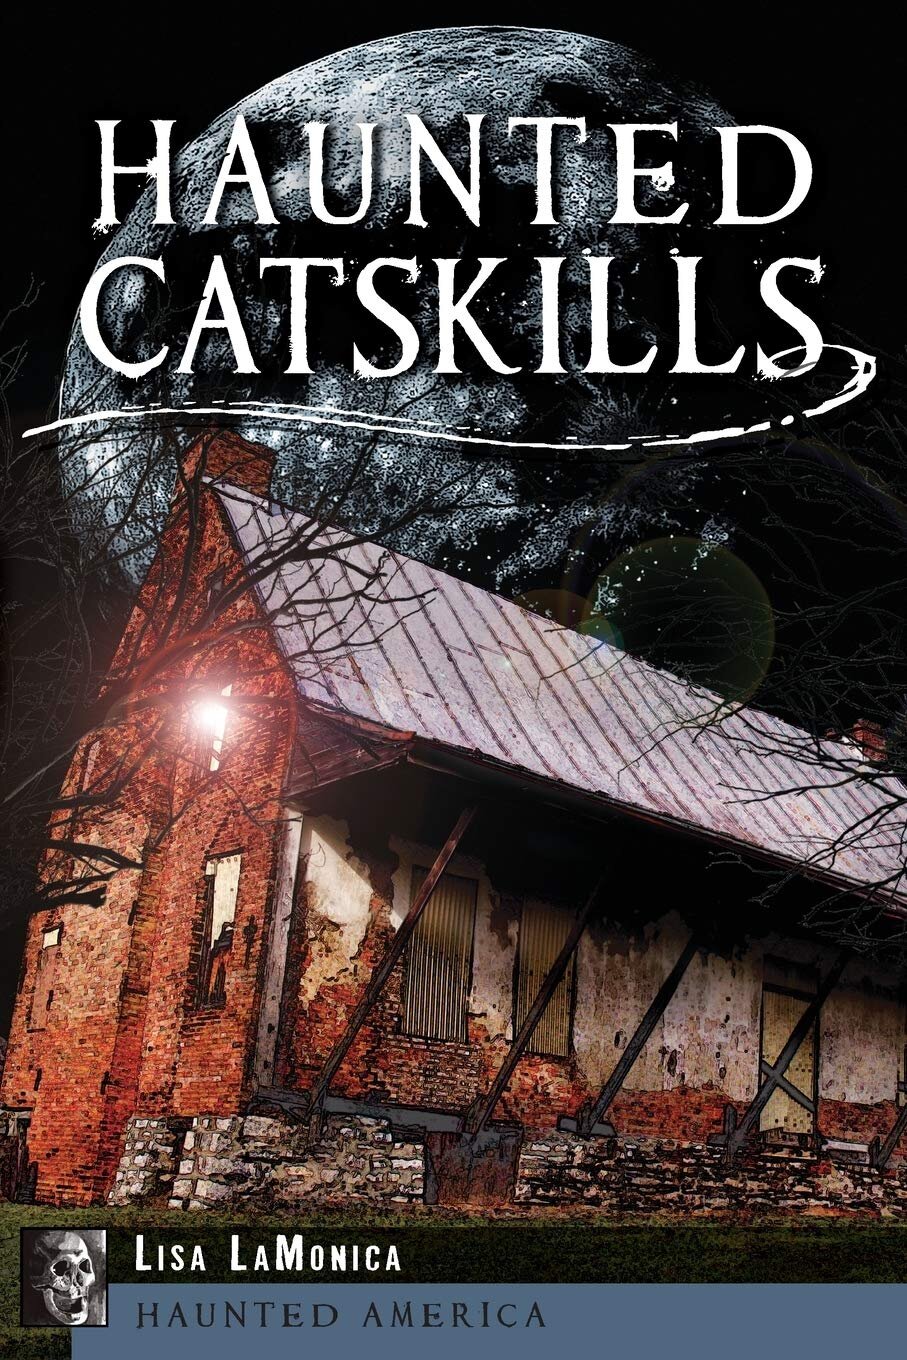 "Haunted Catskills" by Lisa LaMonica